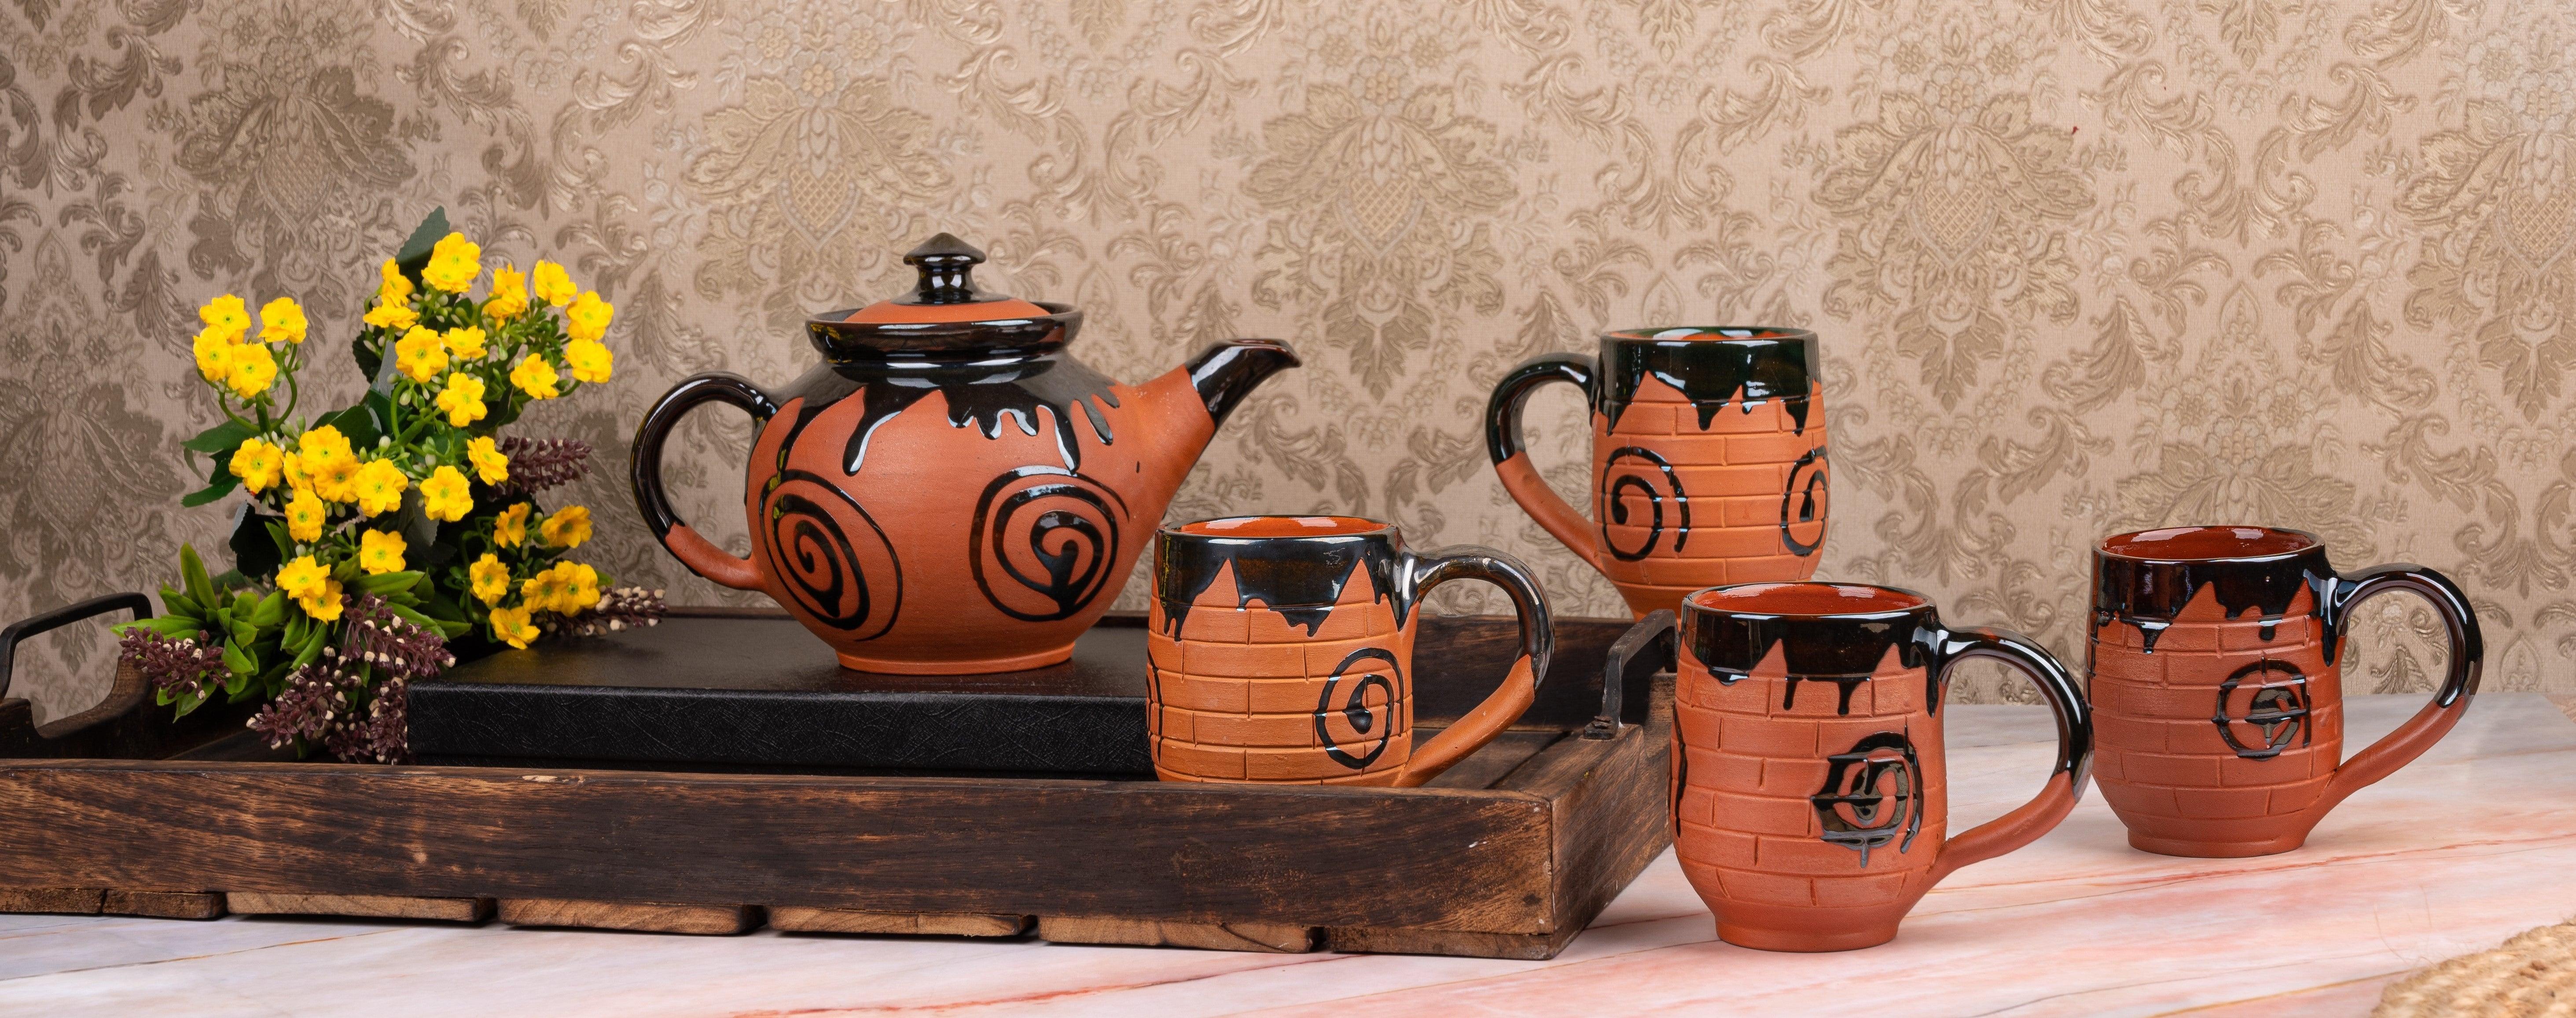 Terracotta Handicraft - The Heritage Artifacts